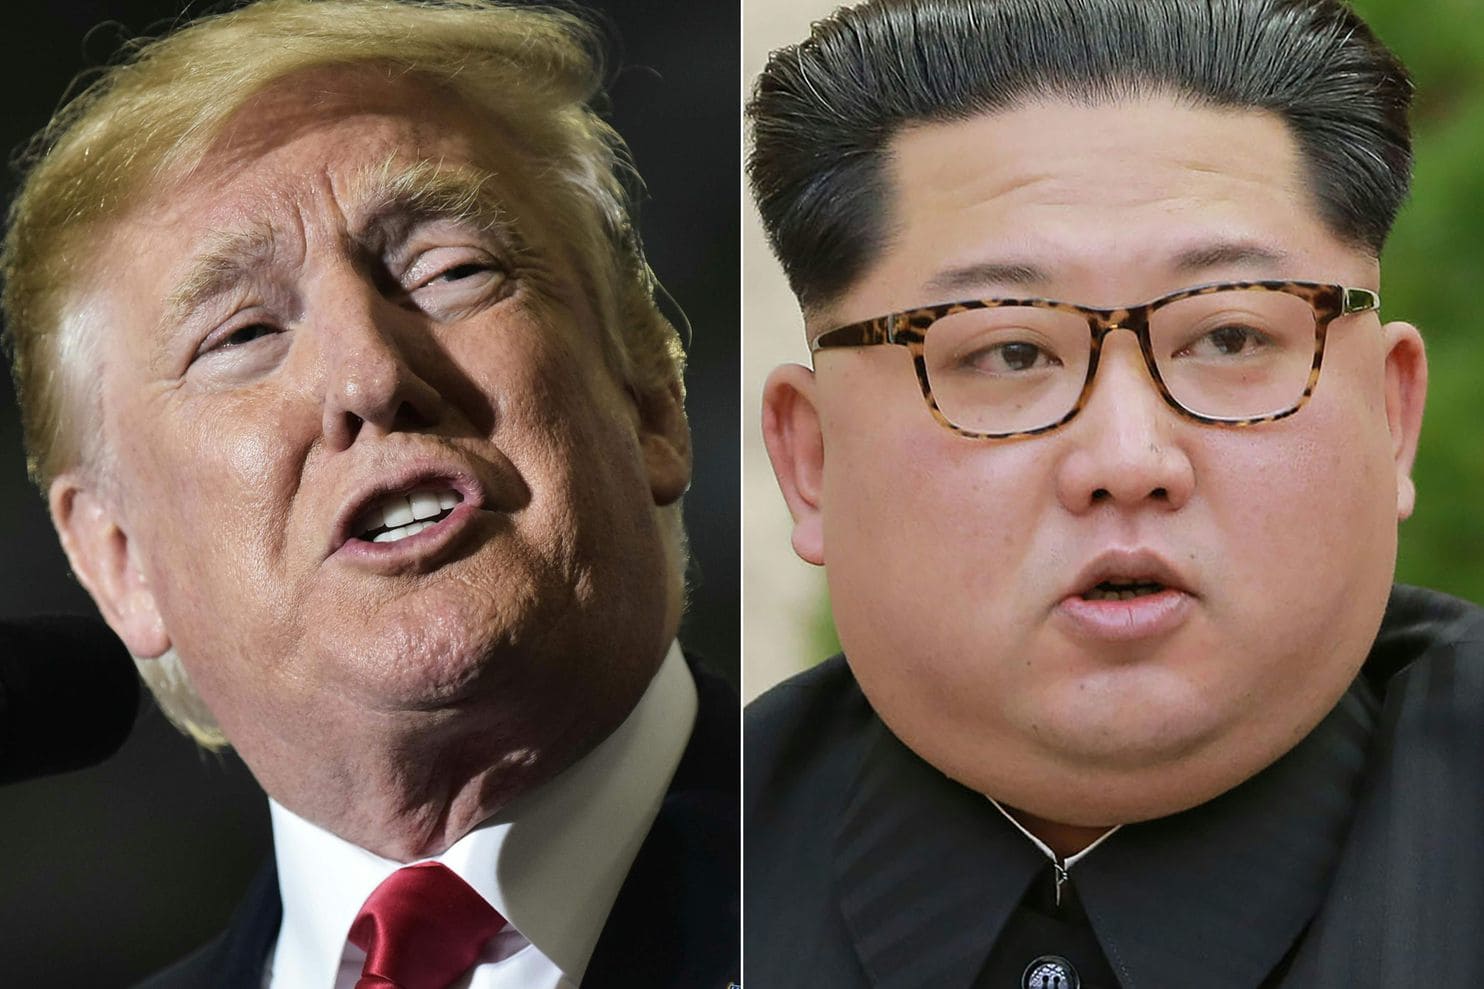 Trump & Kim Jong-un